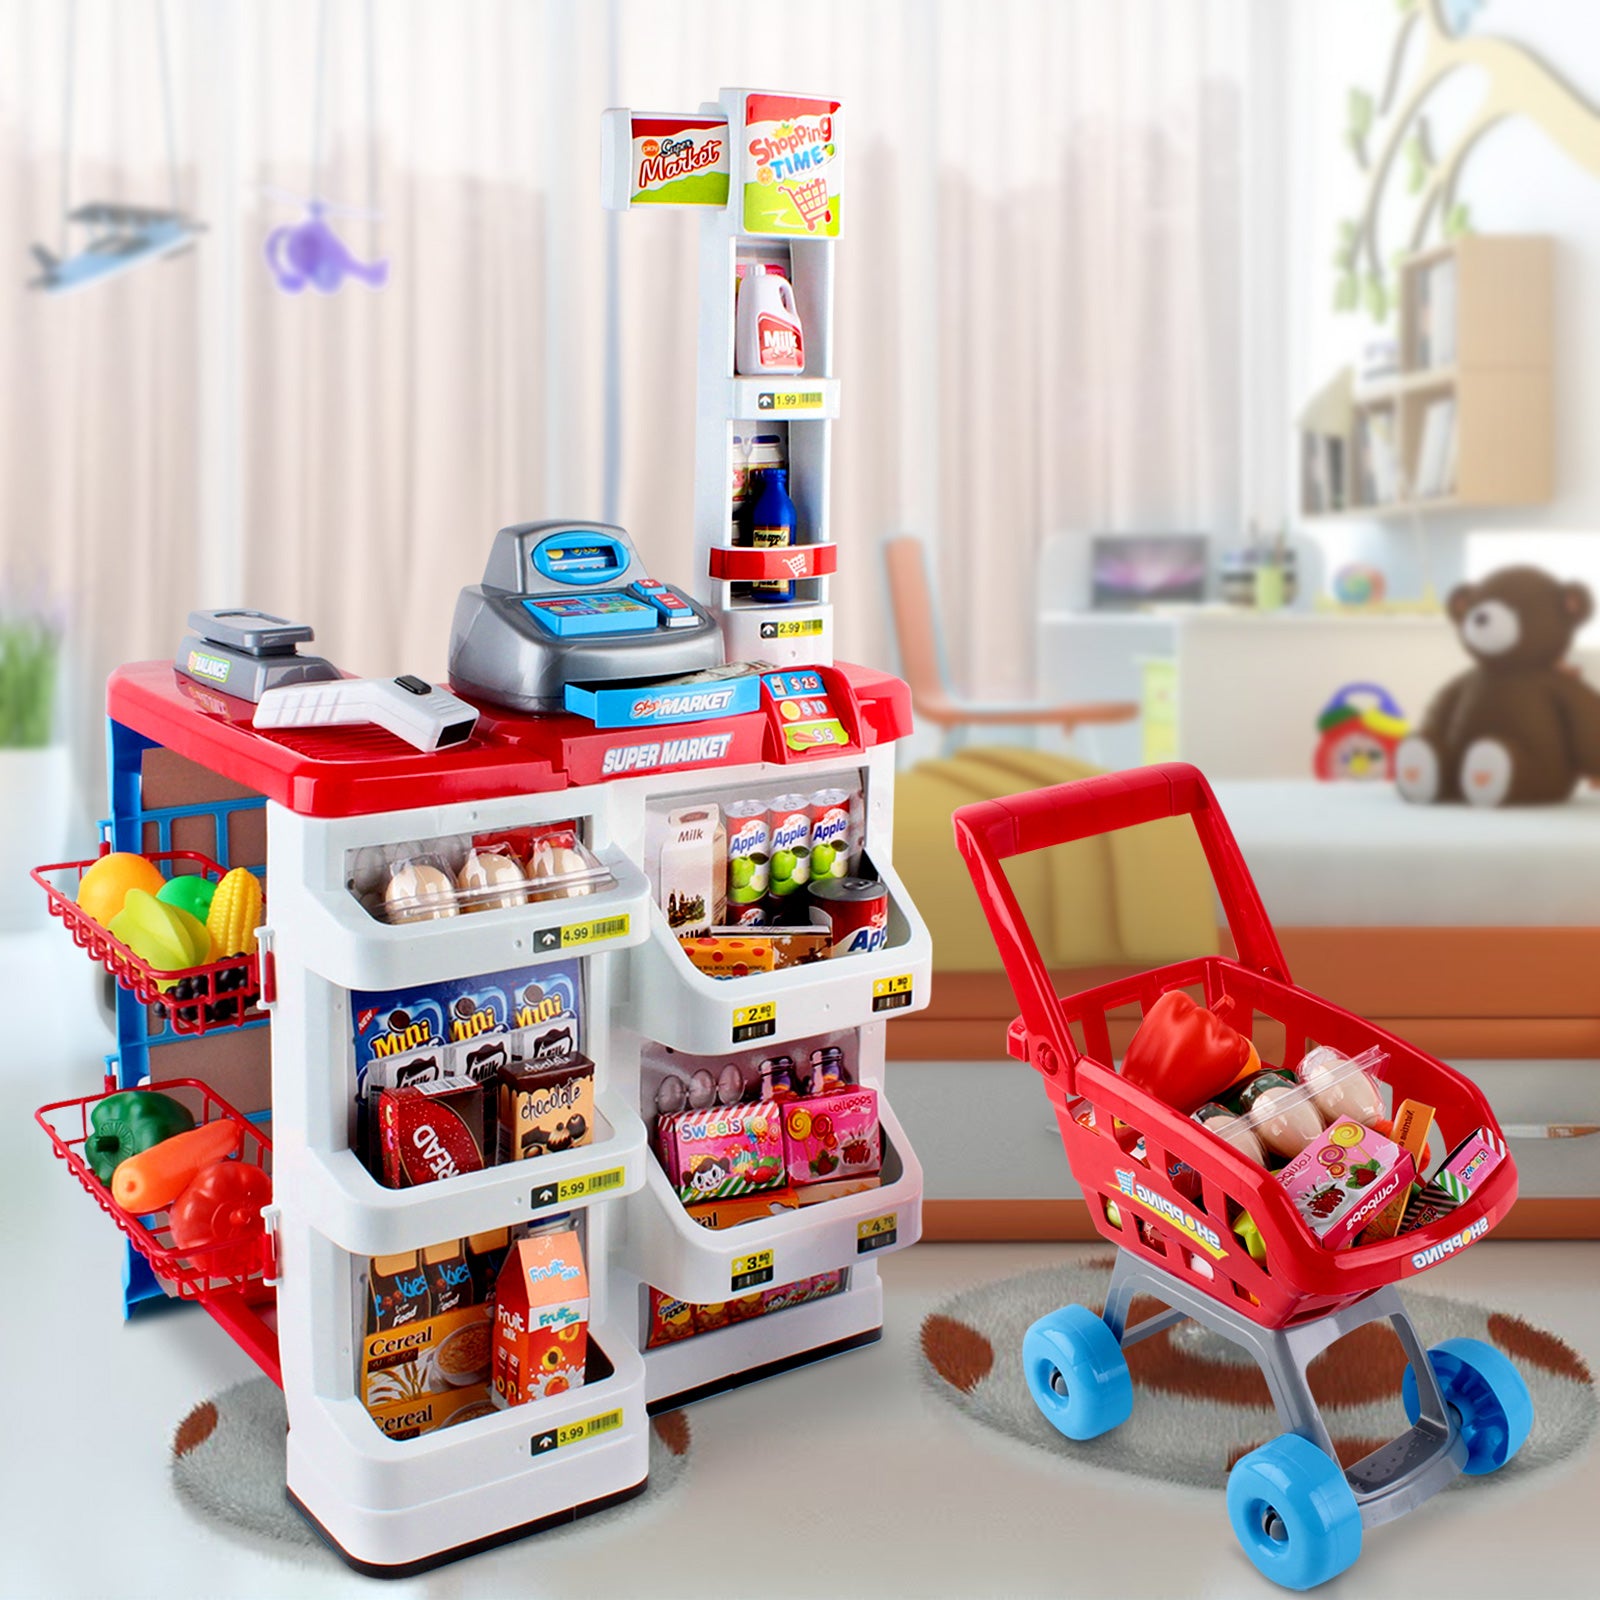 24 Piece Kids Super Market Toy Set - Red & White - image7